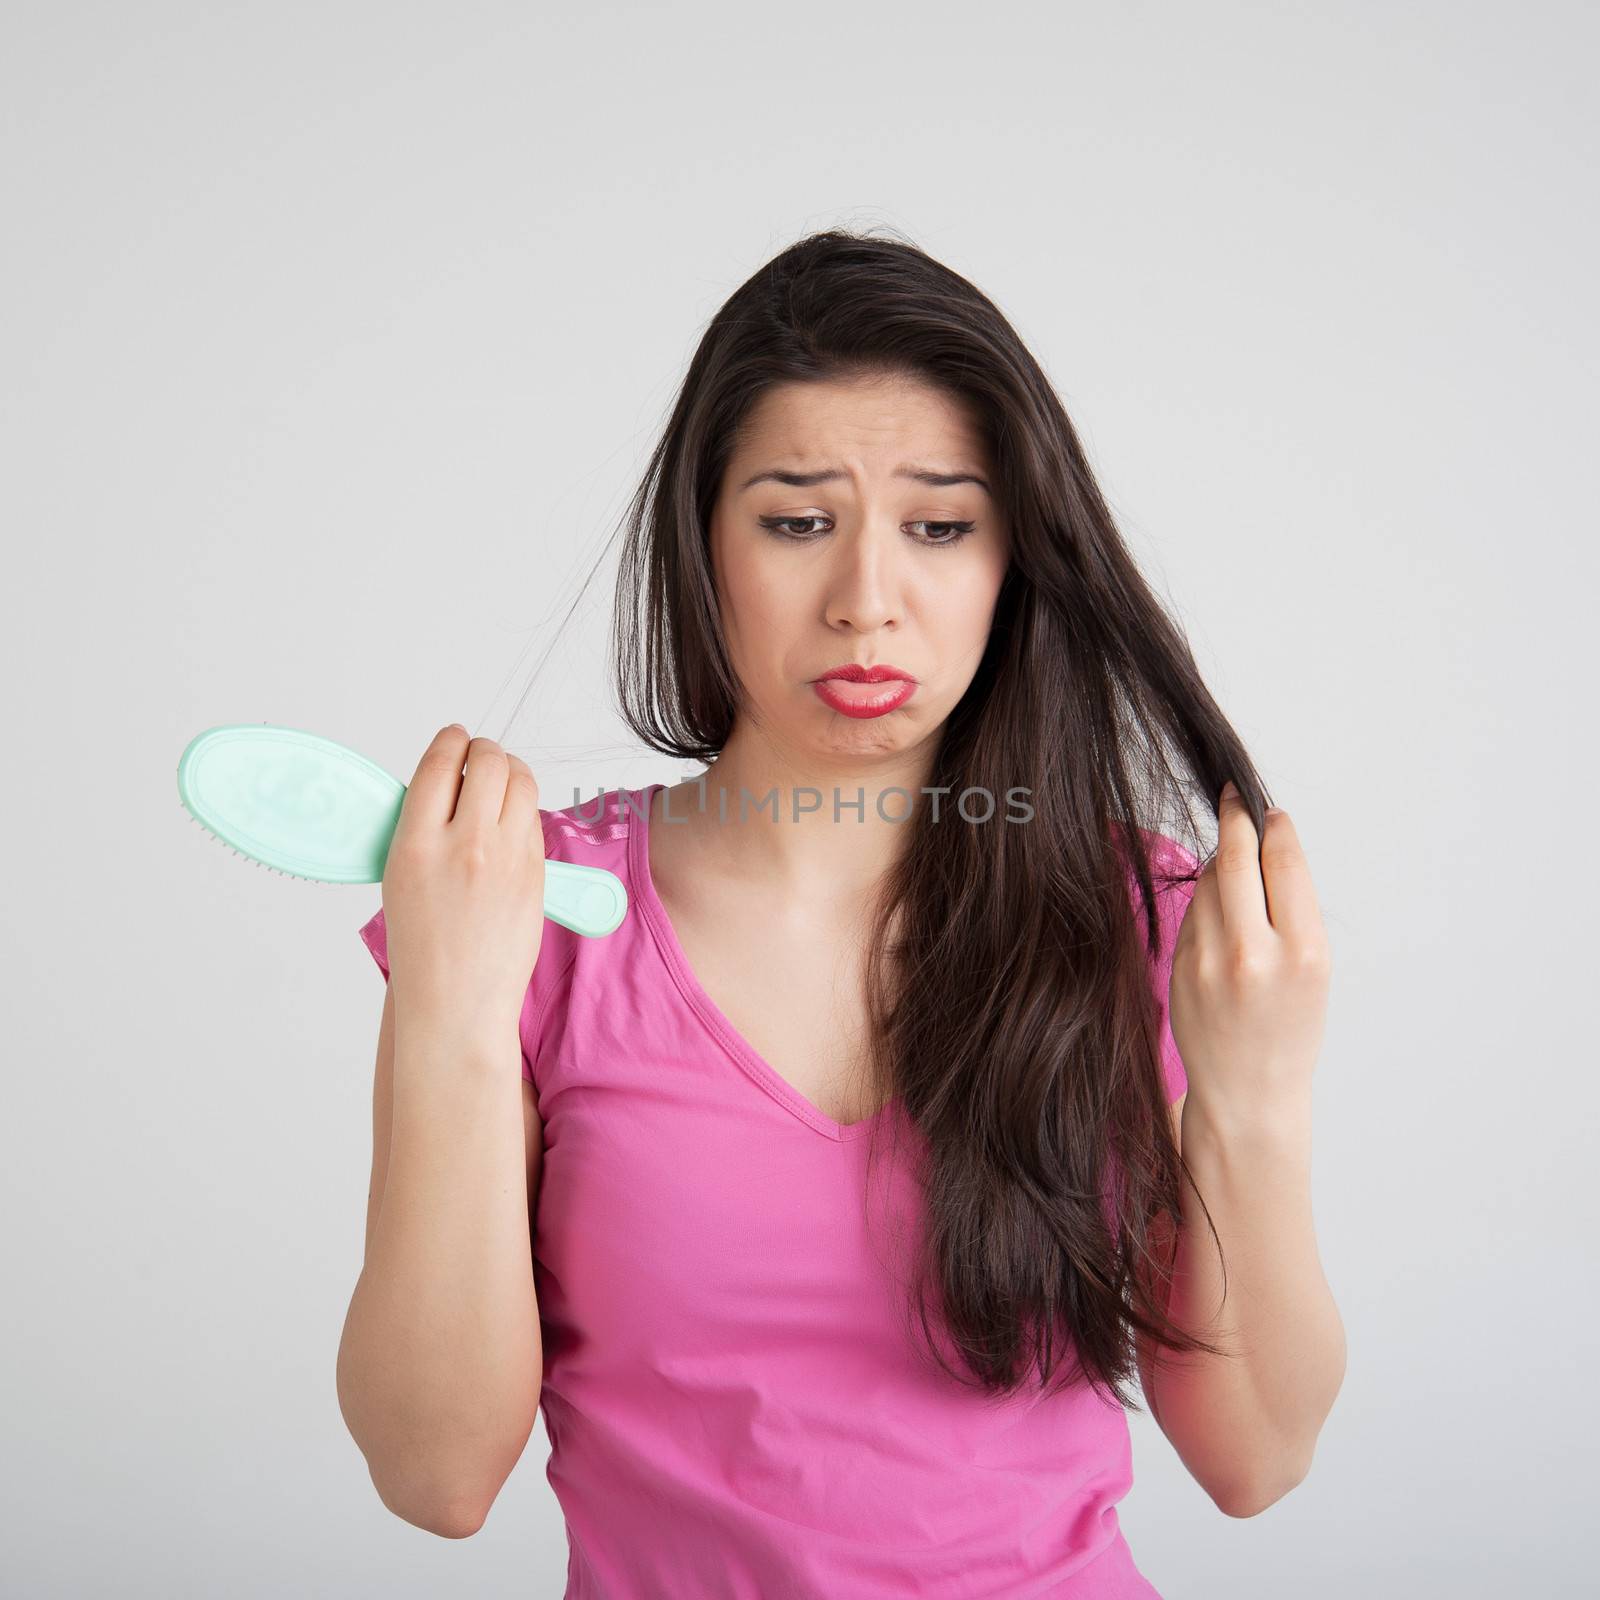 shocked woman losing hair on hairbrush by raduga21